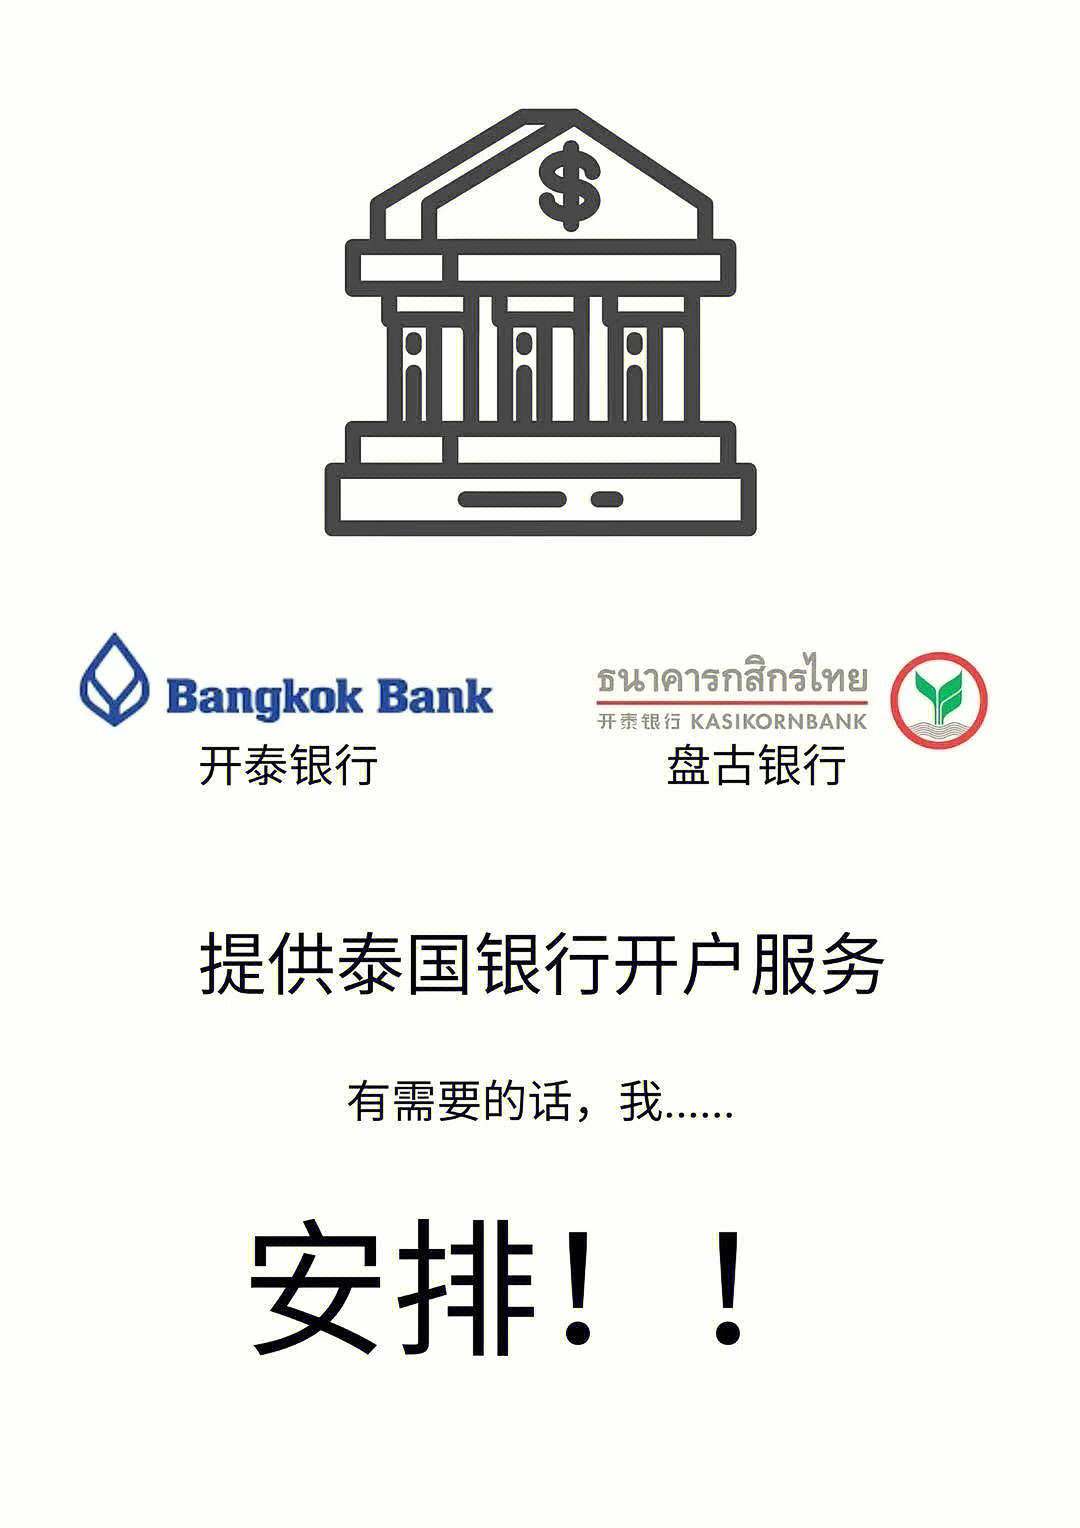 可以开通的两家:bangkok bank曼谷银行kasikorn bank 盘古银行手续